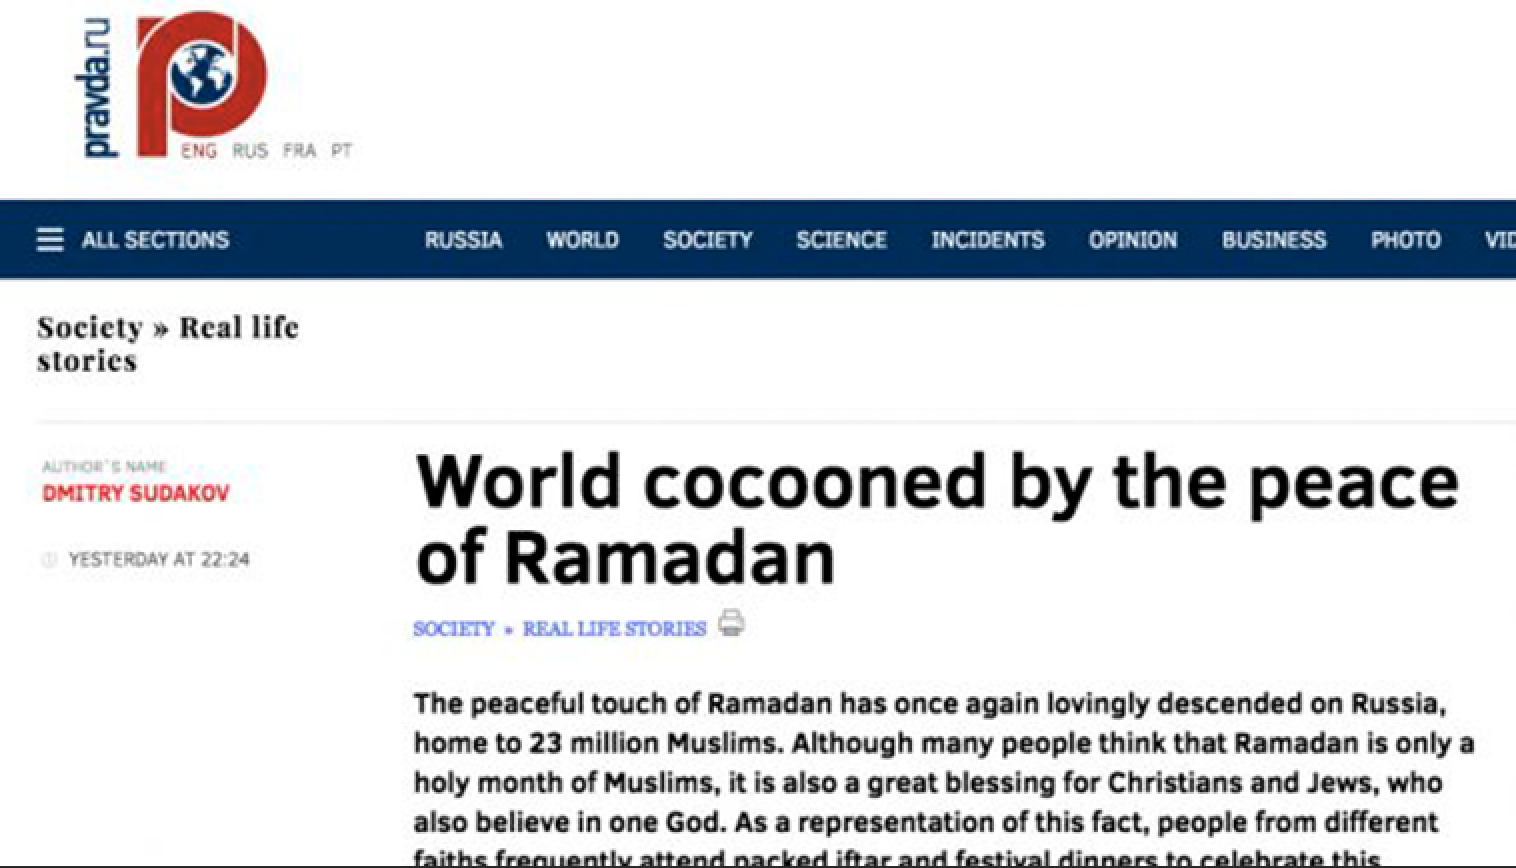 Huzurlu Ramazan atmosferi dünyayı sararken